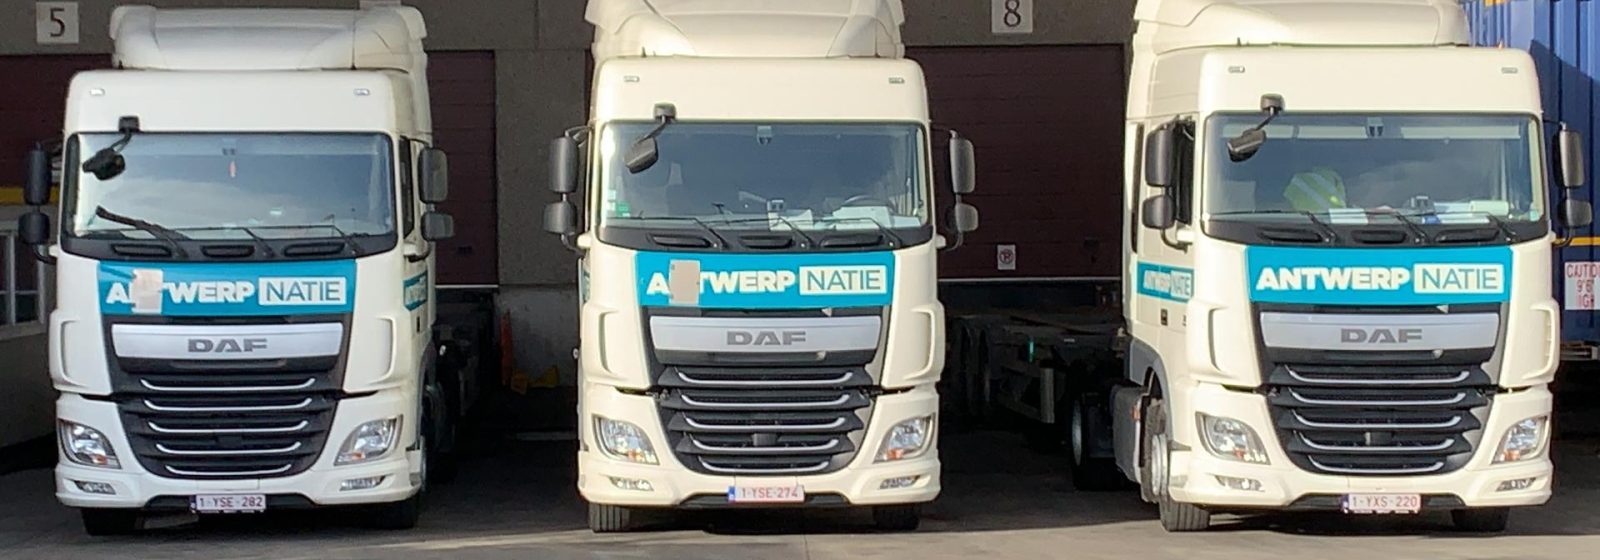 Vrachtwagens van Antwerpnatie